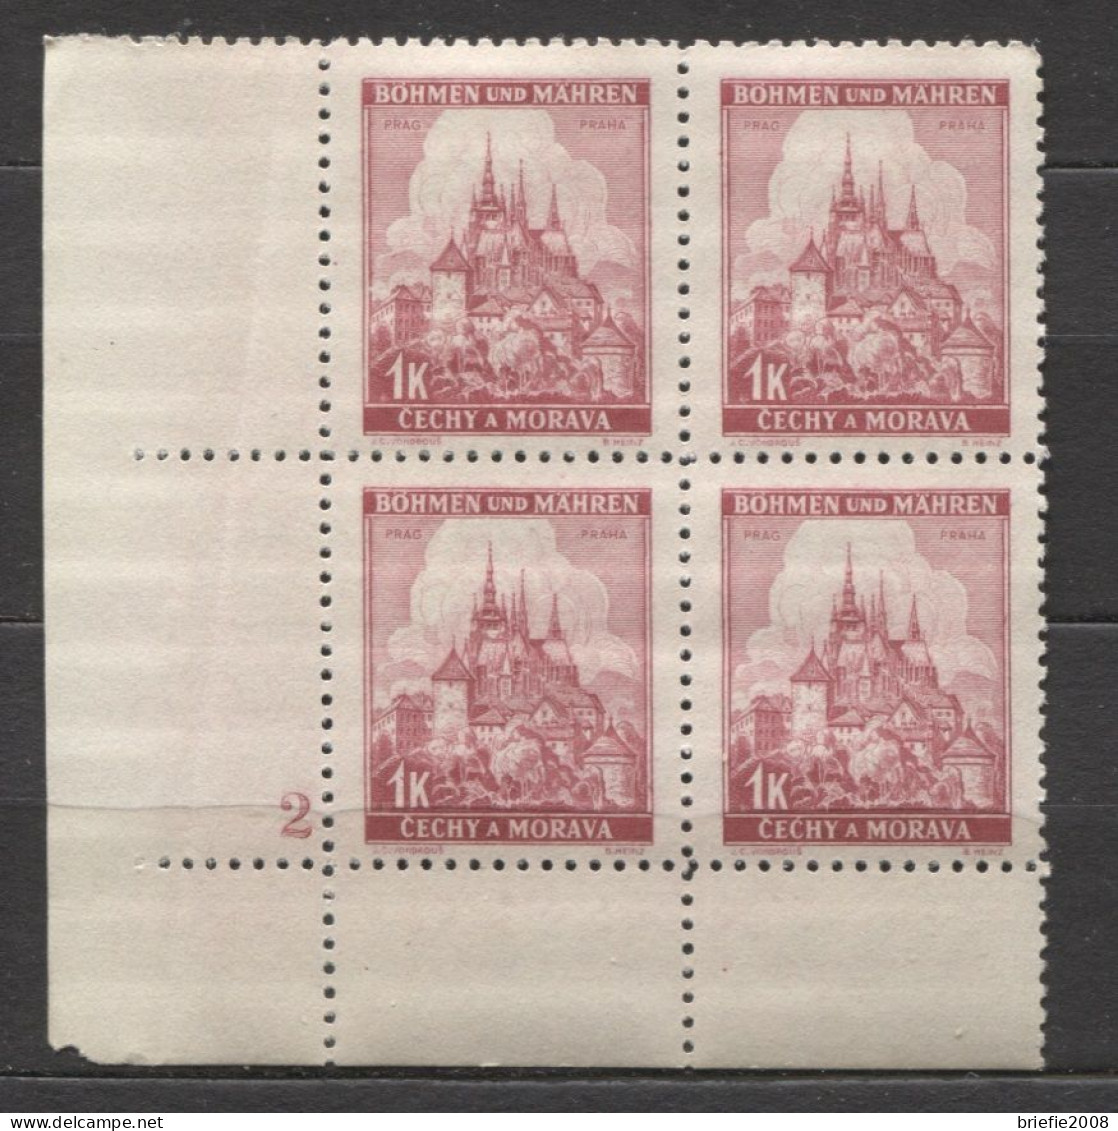 Böhmen Und Mähren # 28 Platten-4erBlock Nr. 2 Breiter Unterrand Aus 50erBogen, Postfrisch - Unused Stamps